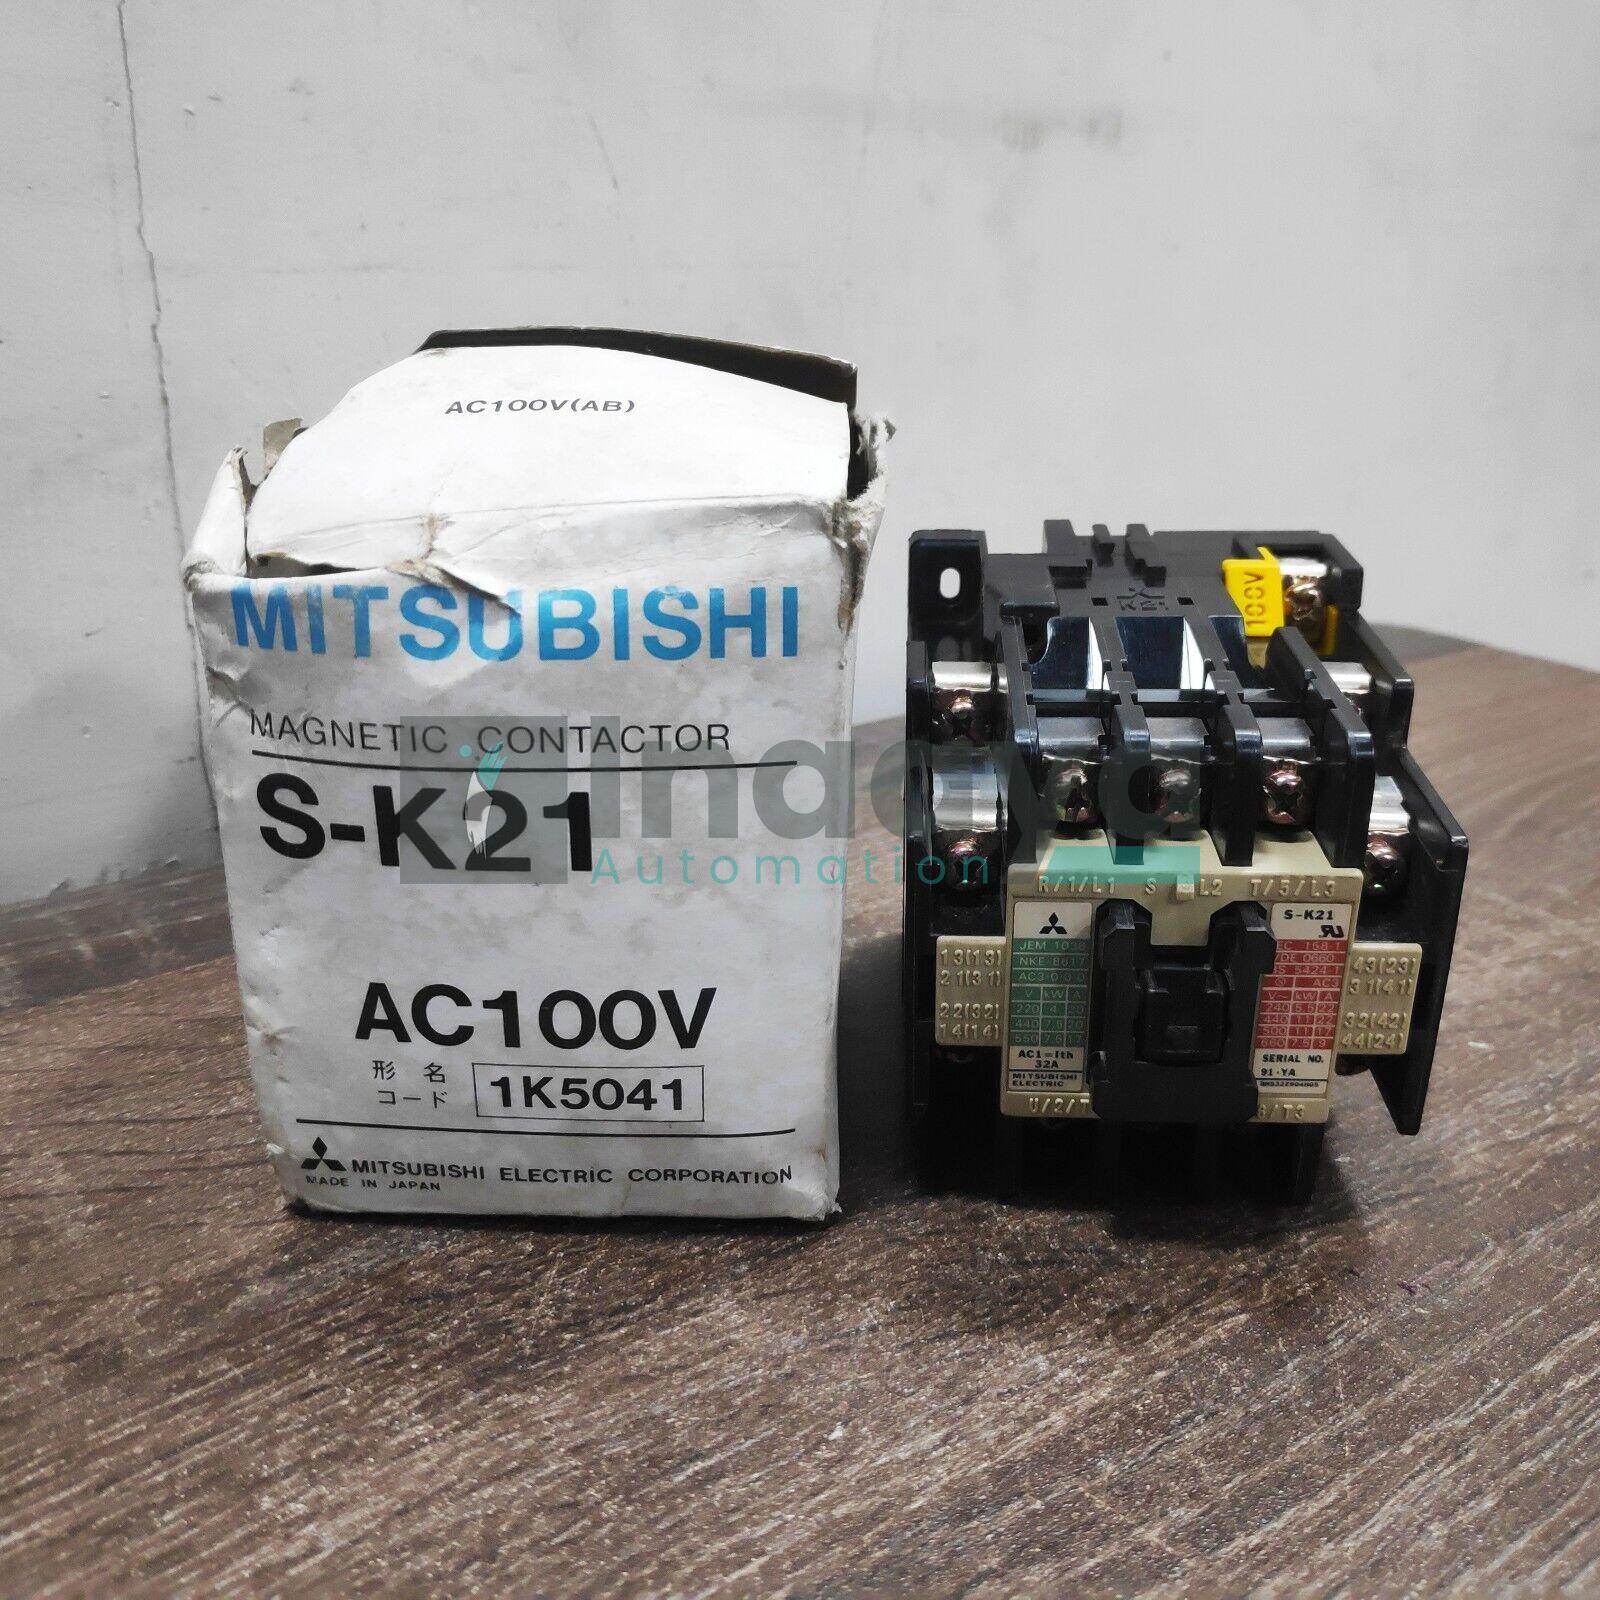 MITSUBISHI S-K21